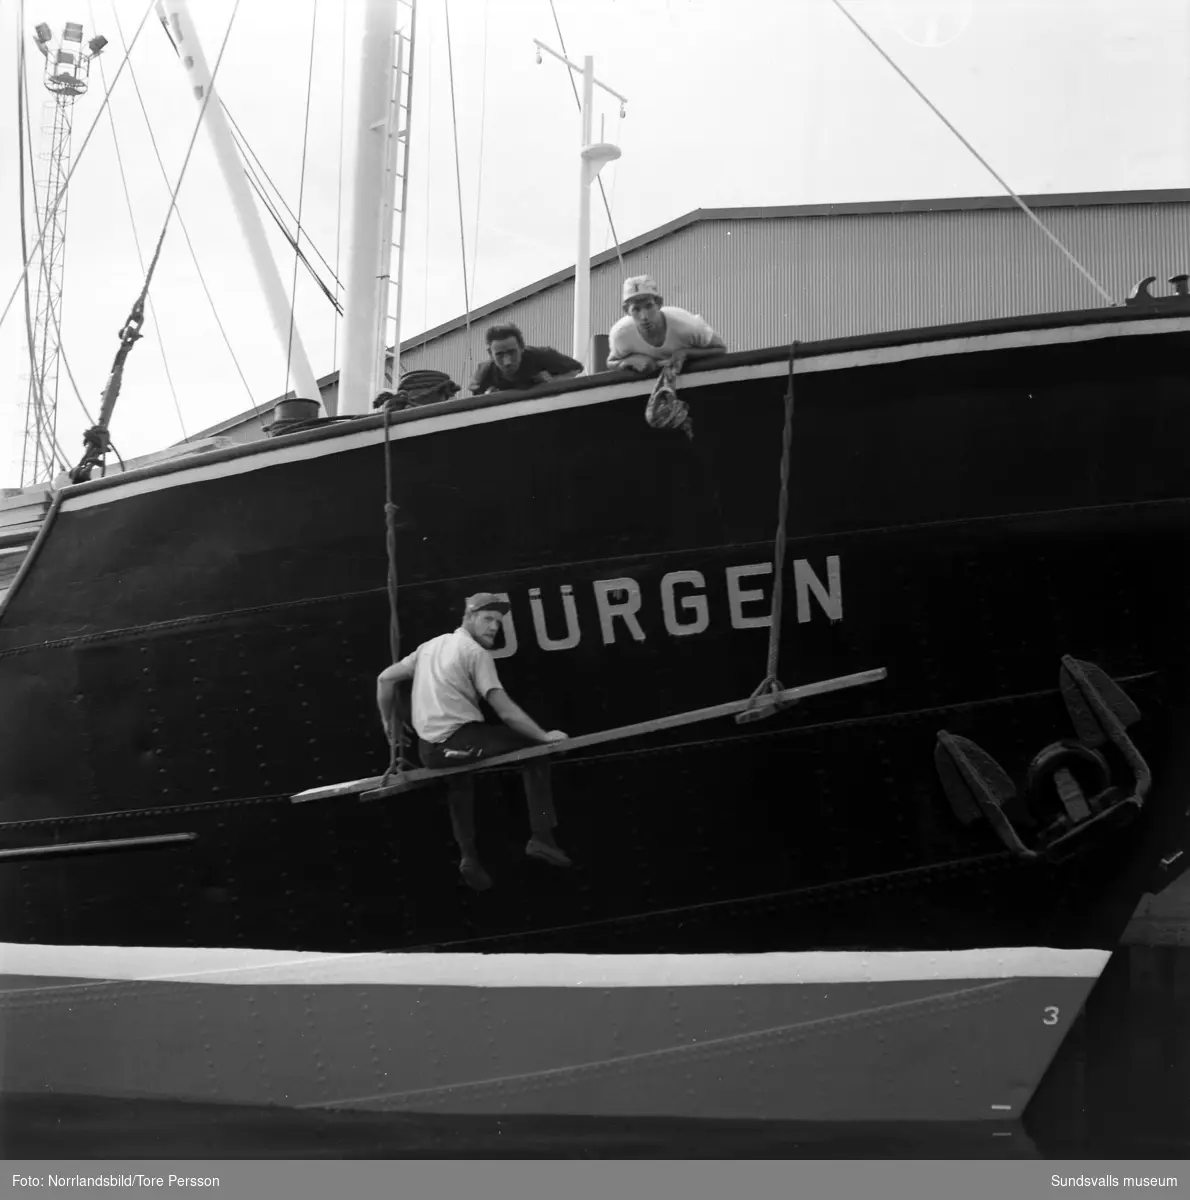 Tunadals sågverk fotograferad från sjösidan. Vid kajen lastas båten Jürgen med sågade trävaror.